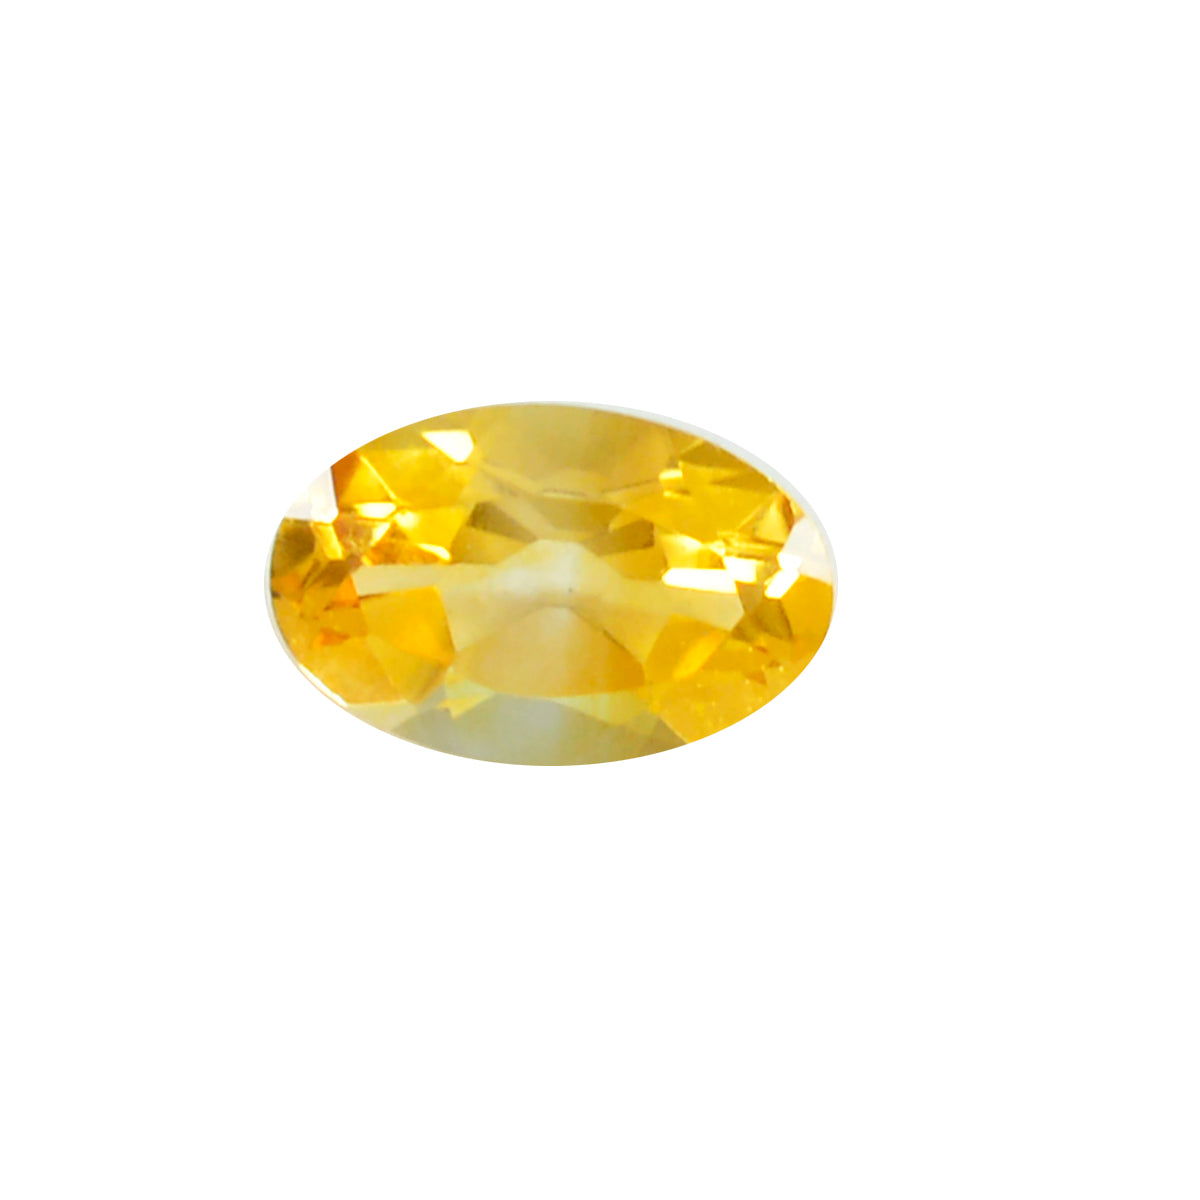 riyogems 1 шт. натуральный желтый цитрин ограненный 7x9 мм овальной формы, довольно качественный свободный драгоценный камень